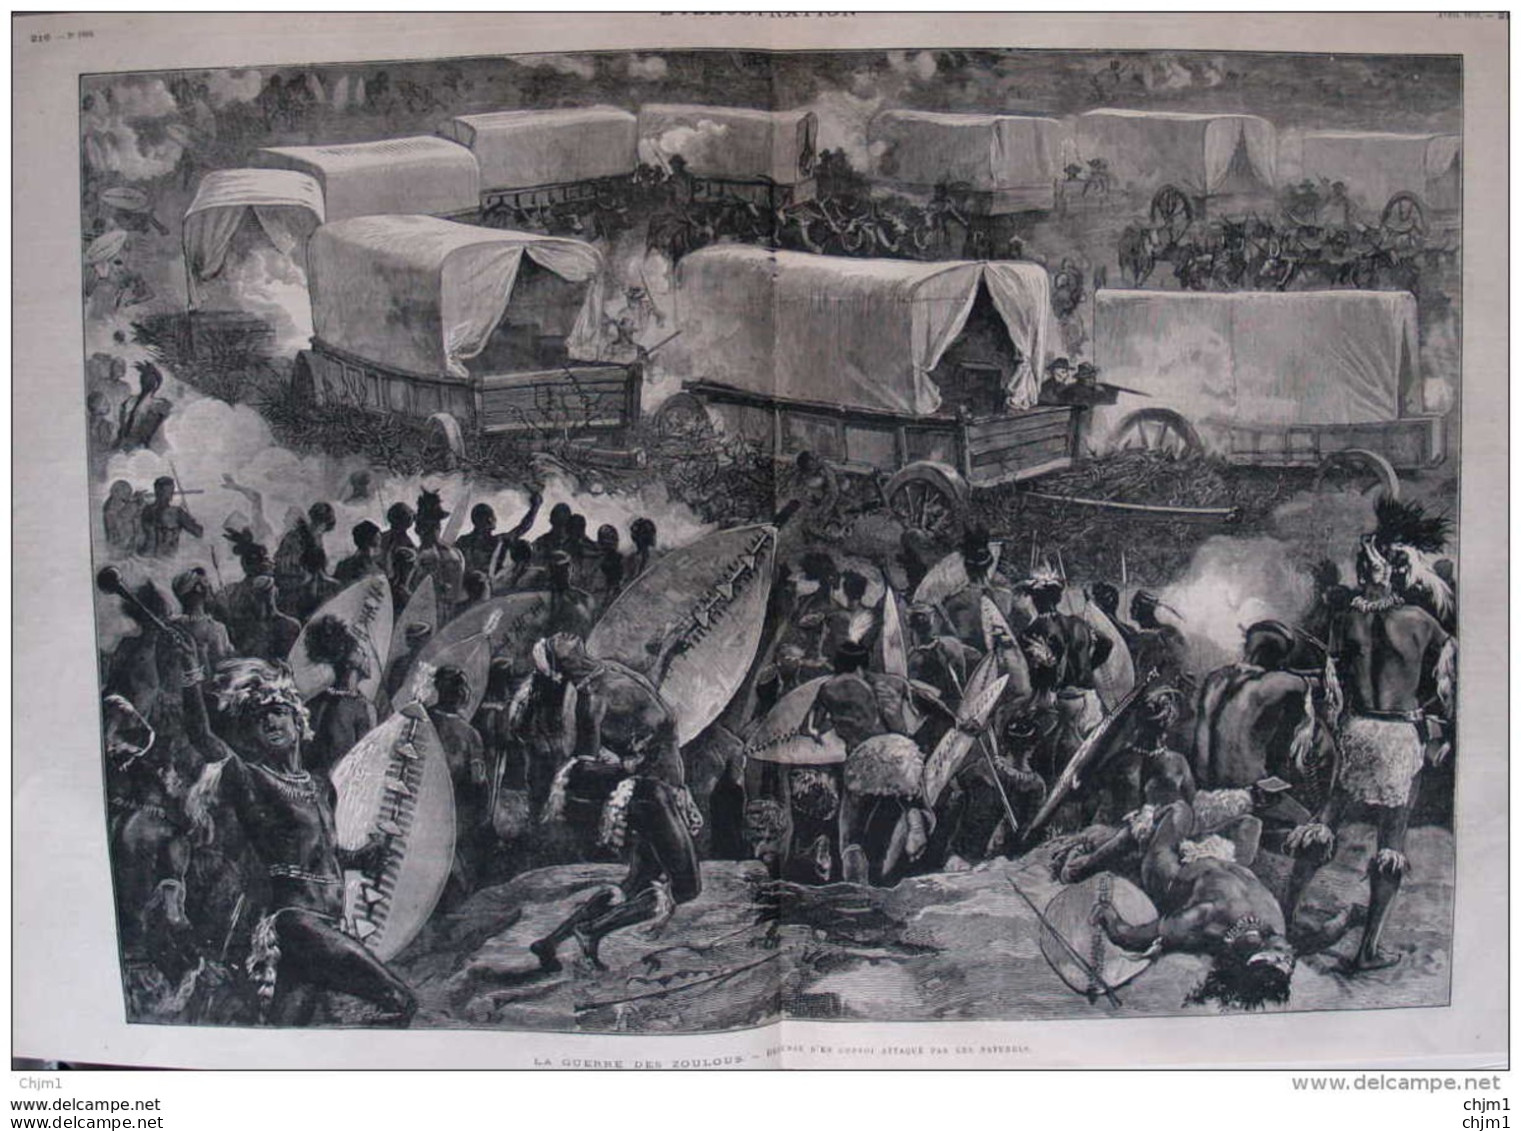 La Guerre Des Zoulous - Défense D'un Convoi Attaqué Par Les Naturels - Page Double Original 1879 - Historical Documents